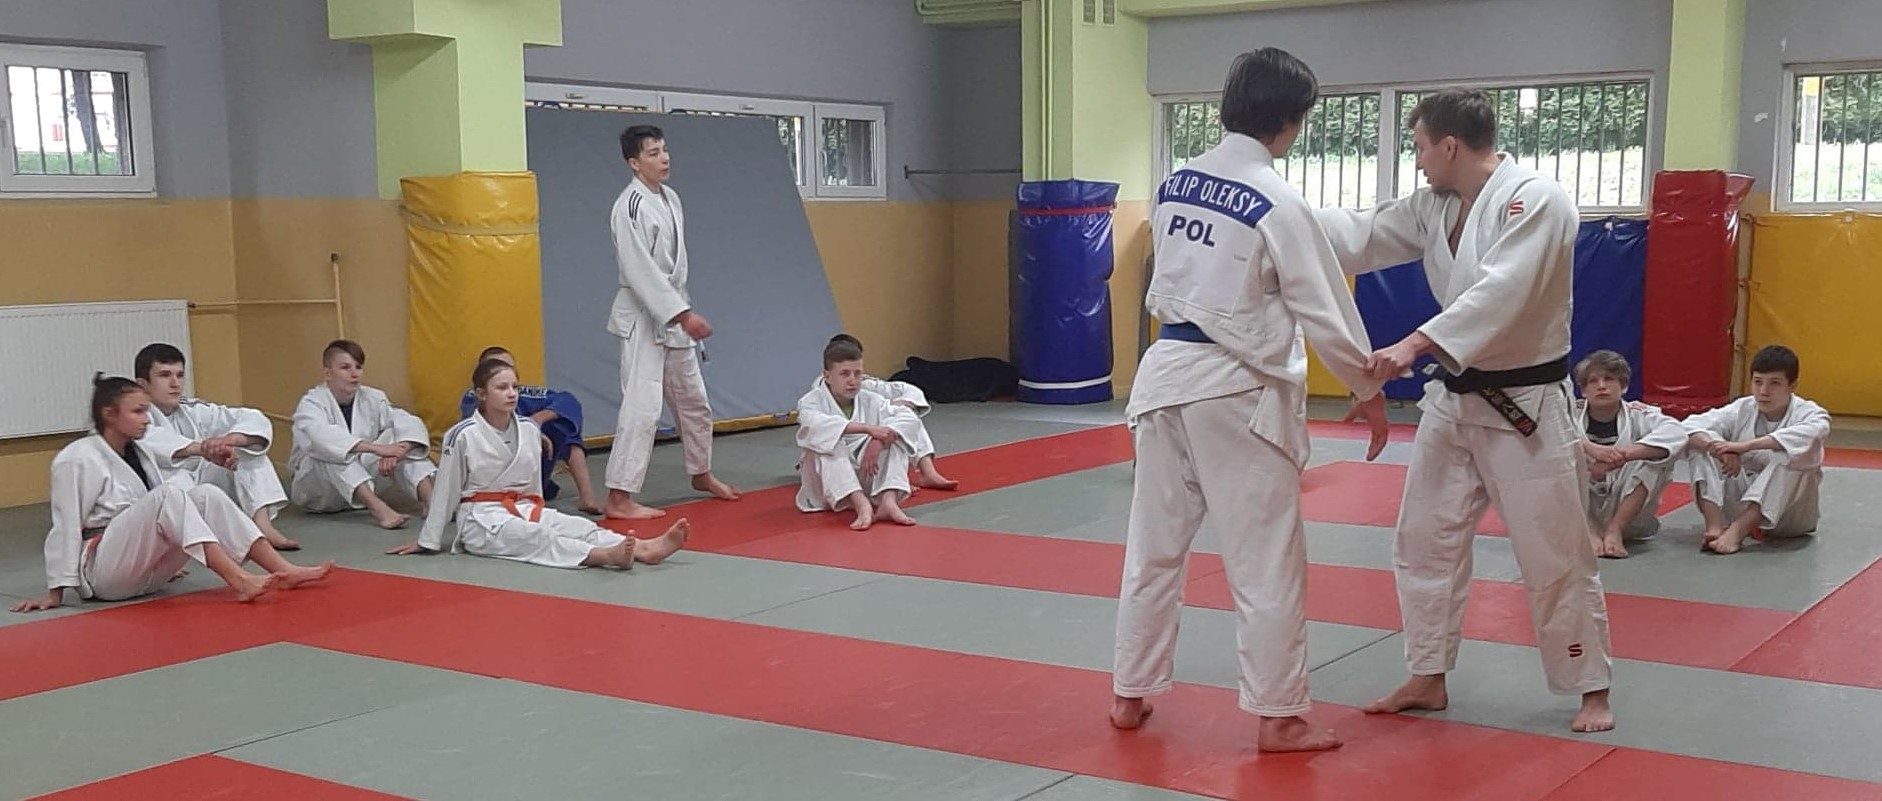 II konsultacje szkoleniowe w Sali Judo z Tomaszem Kowalskim 16-17.04.2021